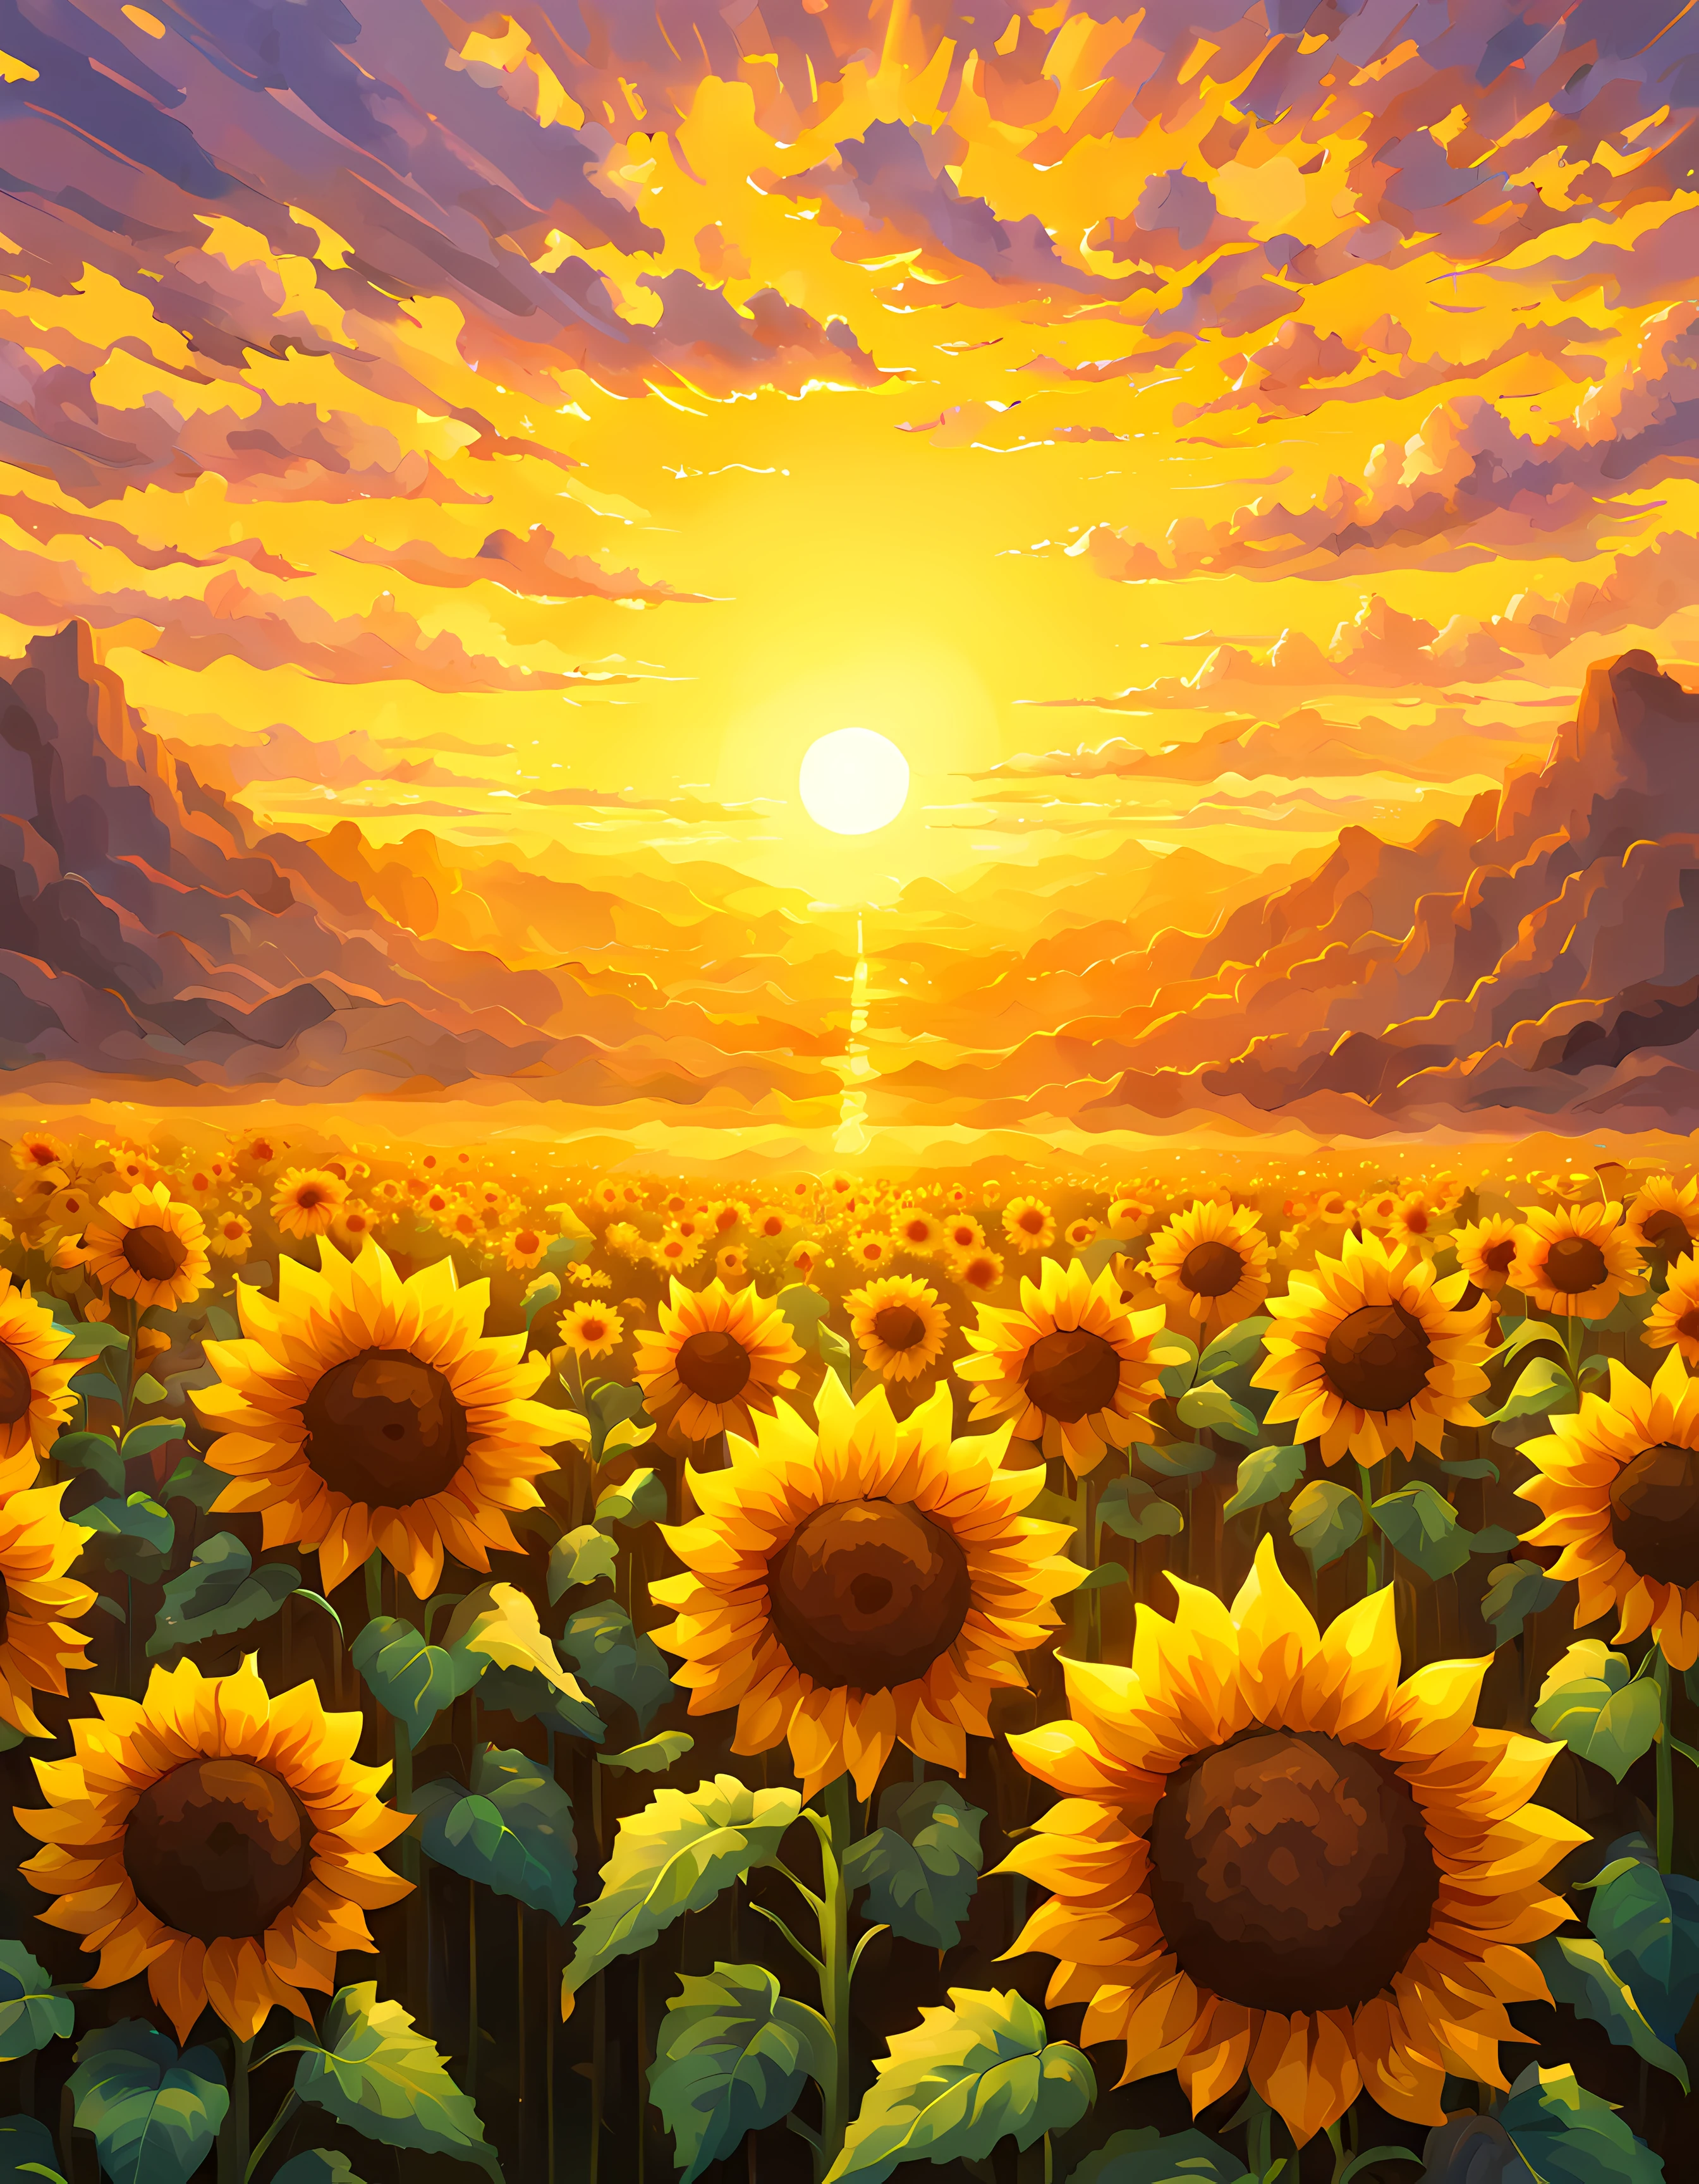 (pixel art:1.3), (Nahaufnahme:1.3), Weites offenes Feld, getaucht in die sanften Farben einer atemberaubenden Morgendämmerung, im Zentrum dieser Szene steht eine einzelne Sonnenblume, seine leuchtend gelben Blütenblätter, beleuchtet von den goldenen Strahlen der Sonne, Ein Hauch von Magie erfüllt die Luft und lässt die Sonnenblume einen ätherischen Glanz ausstrahlen, absorbiert die Energie und Wärme der Sonne selbst, ein Gefühl von Ehrfurcht und Staunen, die Schönheit und Kraft der Natur, Mehr Details